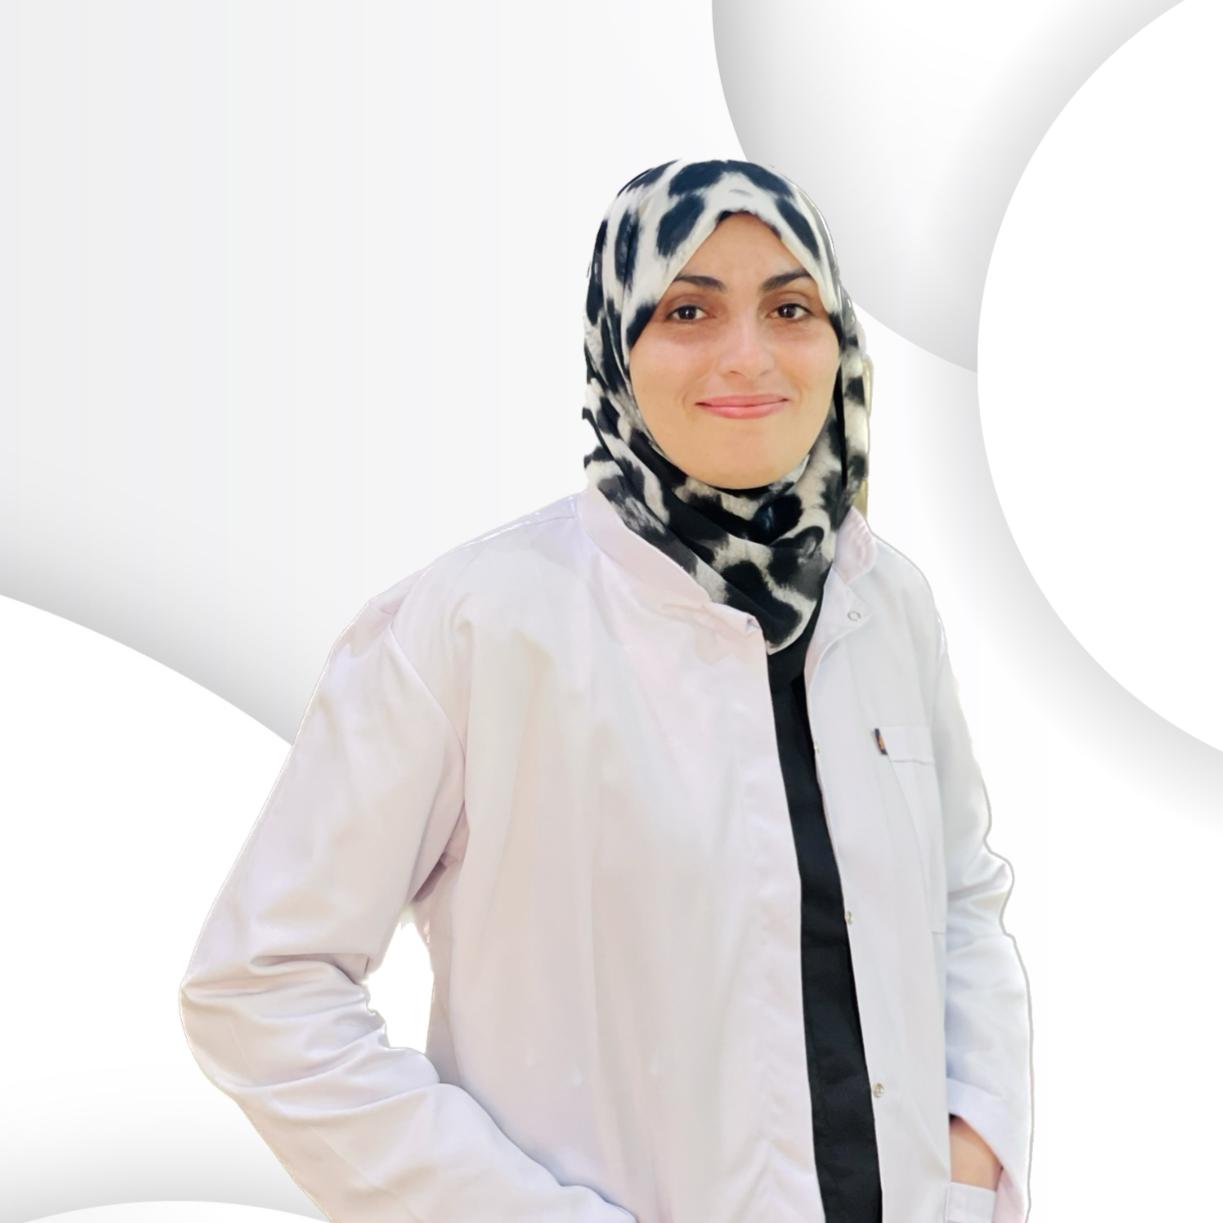 Dr. Mai Saad El lebishy